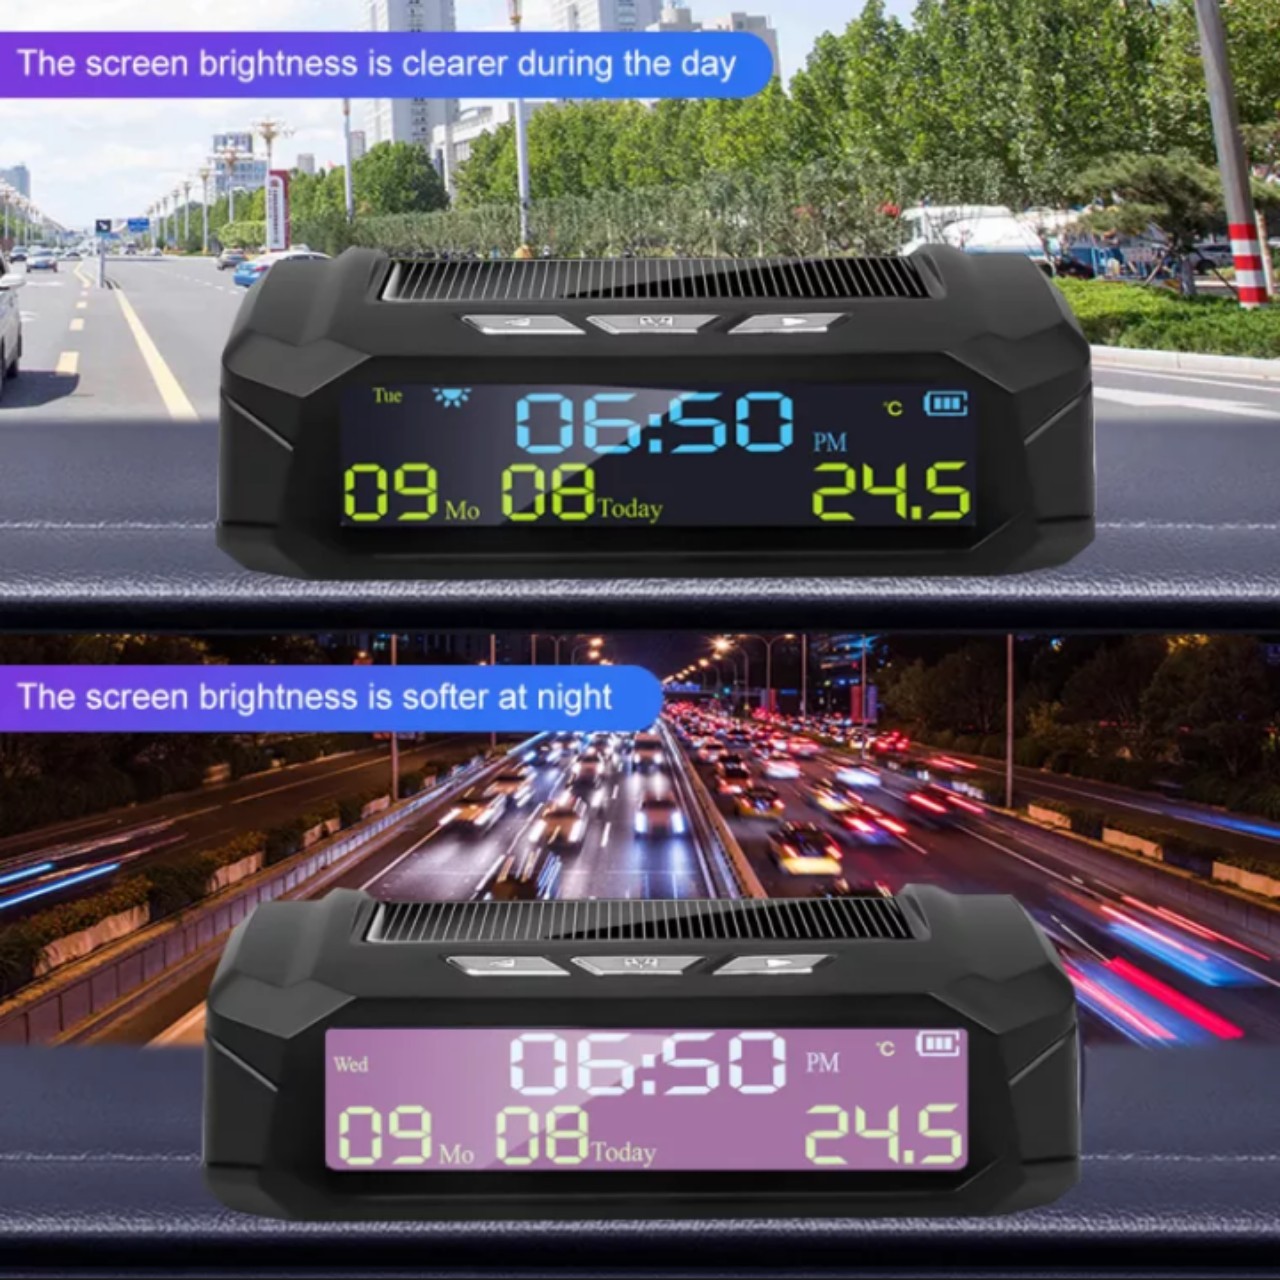 (LOẠI TỐT) Bộ đồng hồ gắn ô tô 3in1 năng lượng mặt trờ báo giờ kèm ngày tháng , nhiệt độ mẫu mới đa năng màn hình led